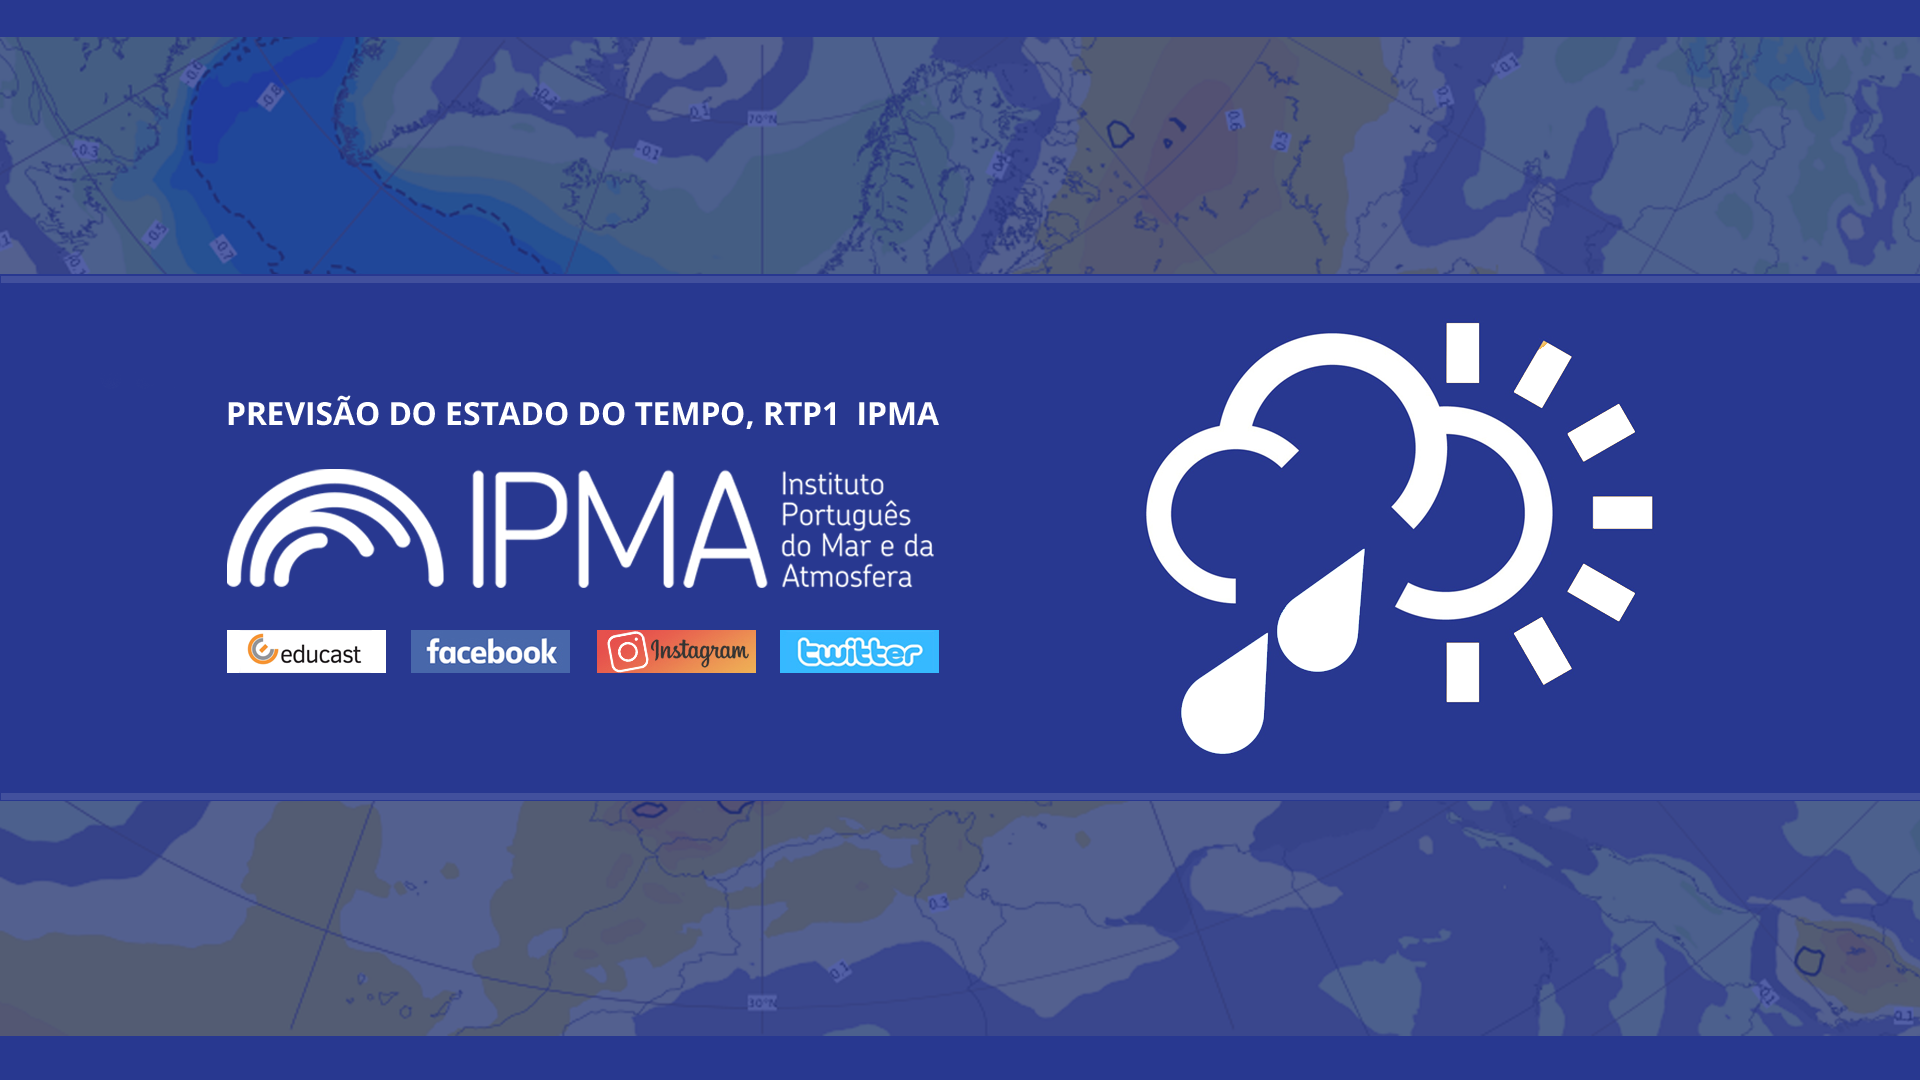  Previsão do estado do tempo, RTP1, 11-02-2022, IPMA.